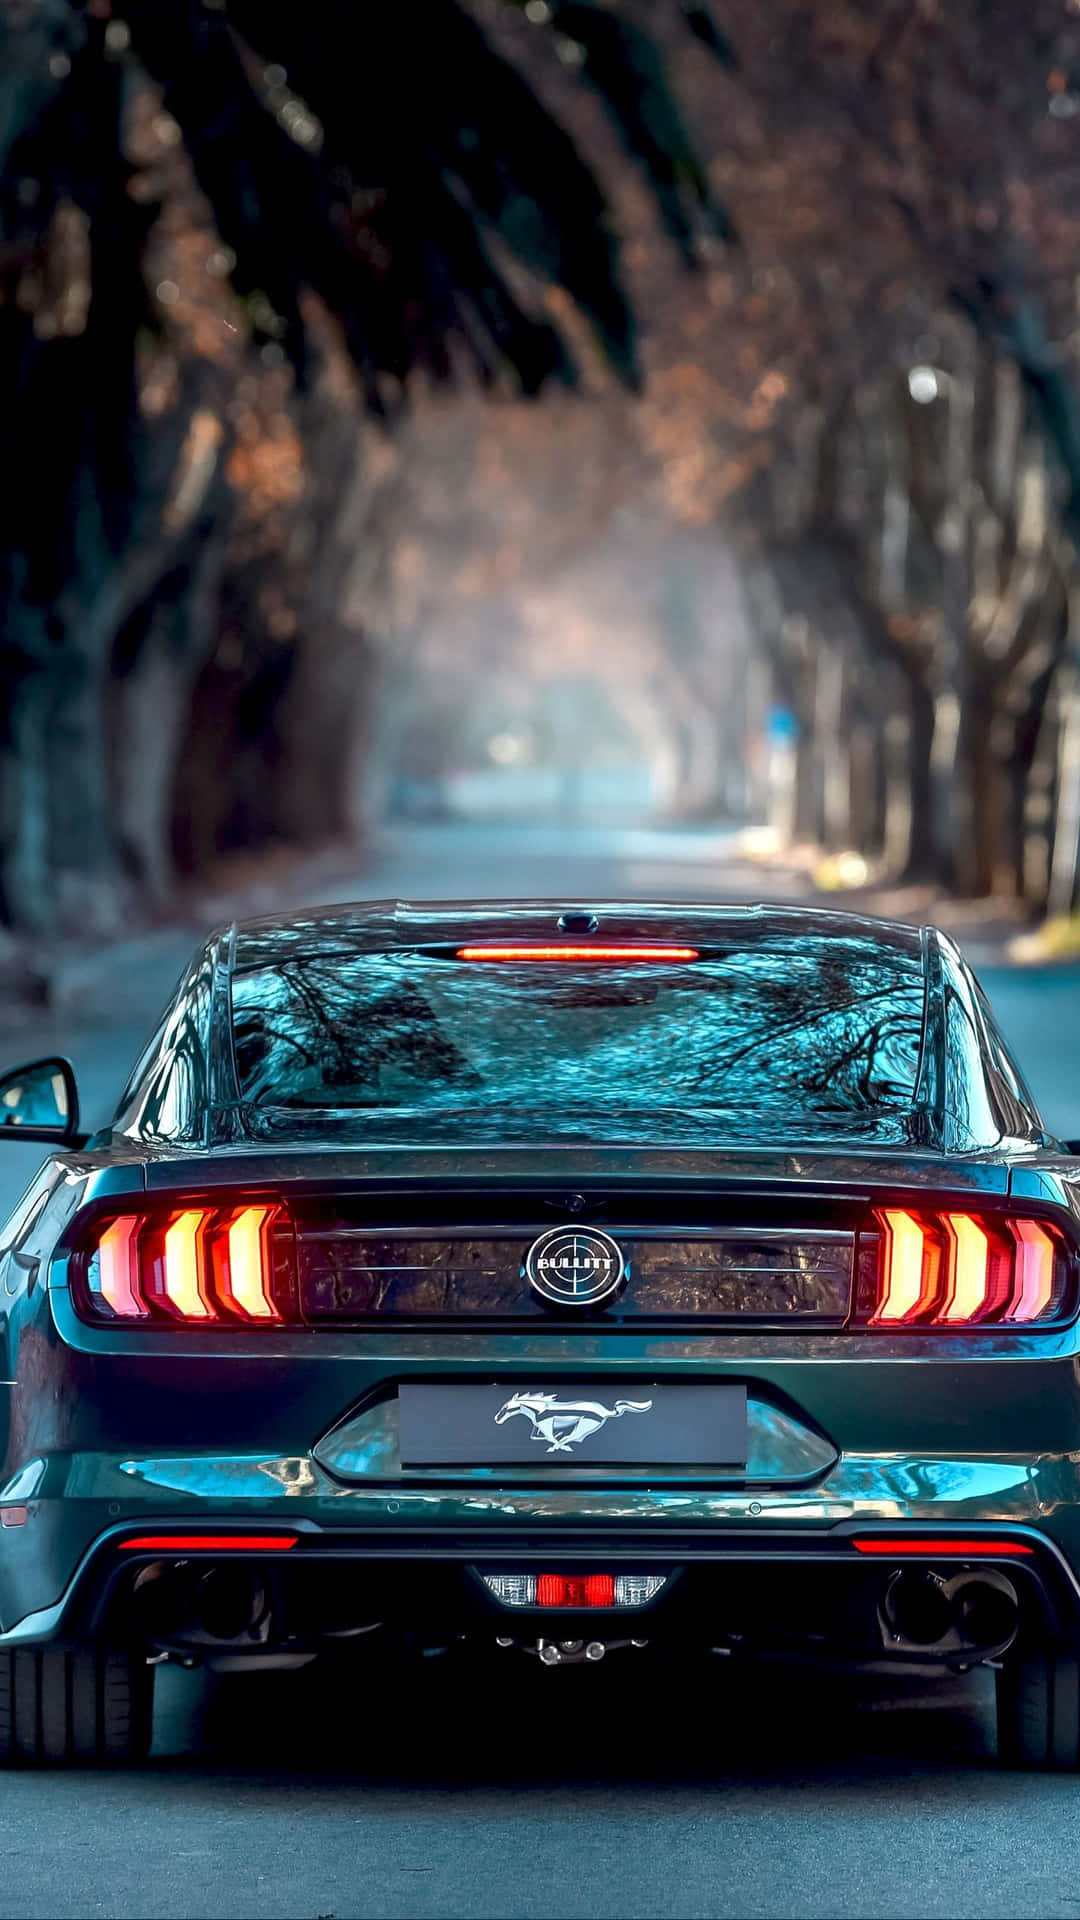 Iphonexs Max Project Cars 2 Mörkgrön 2019 Ford Mustang Bullitt Bakgrund